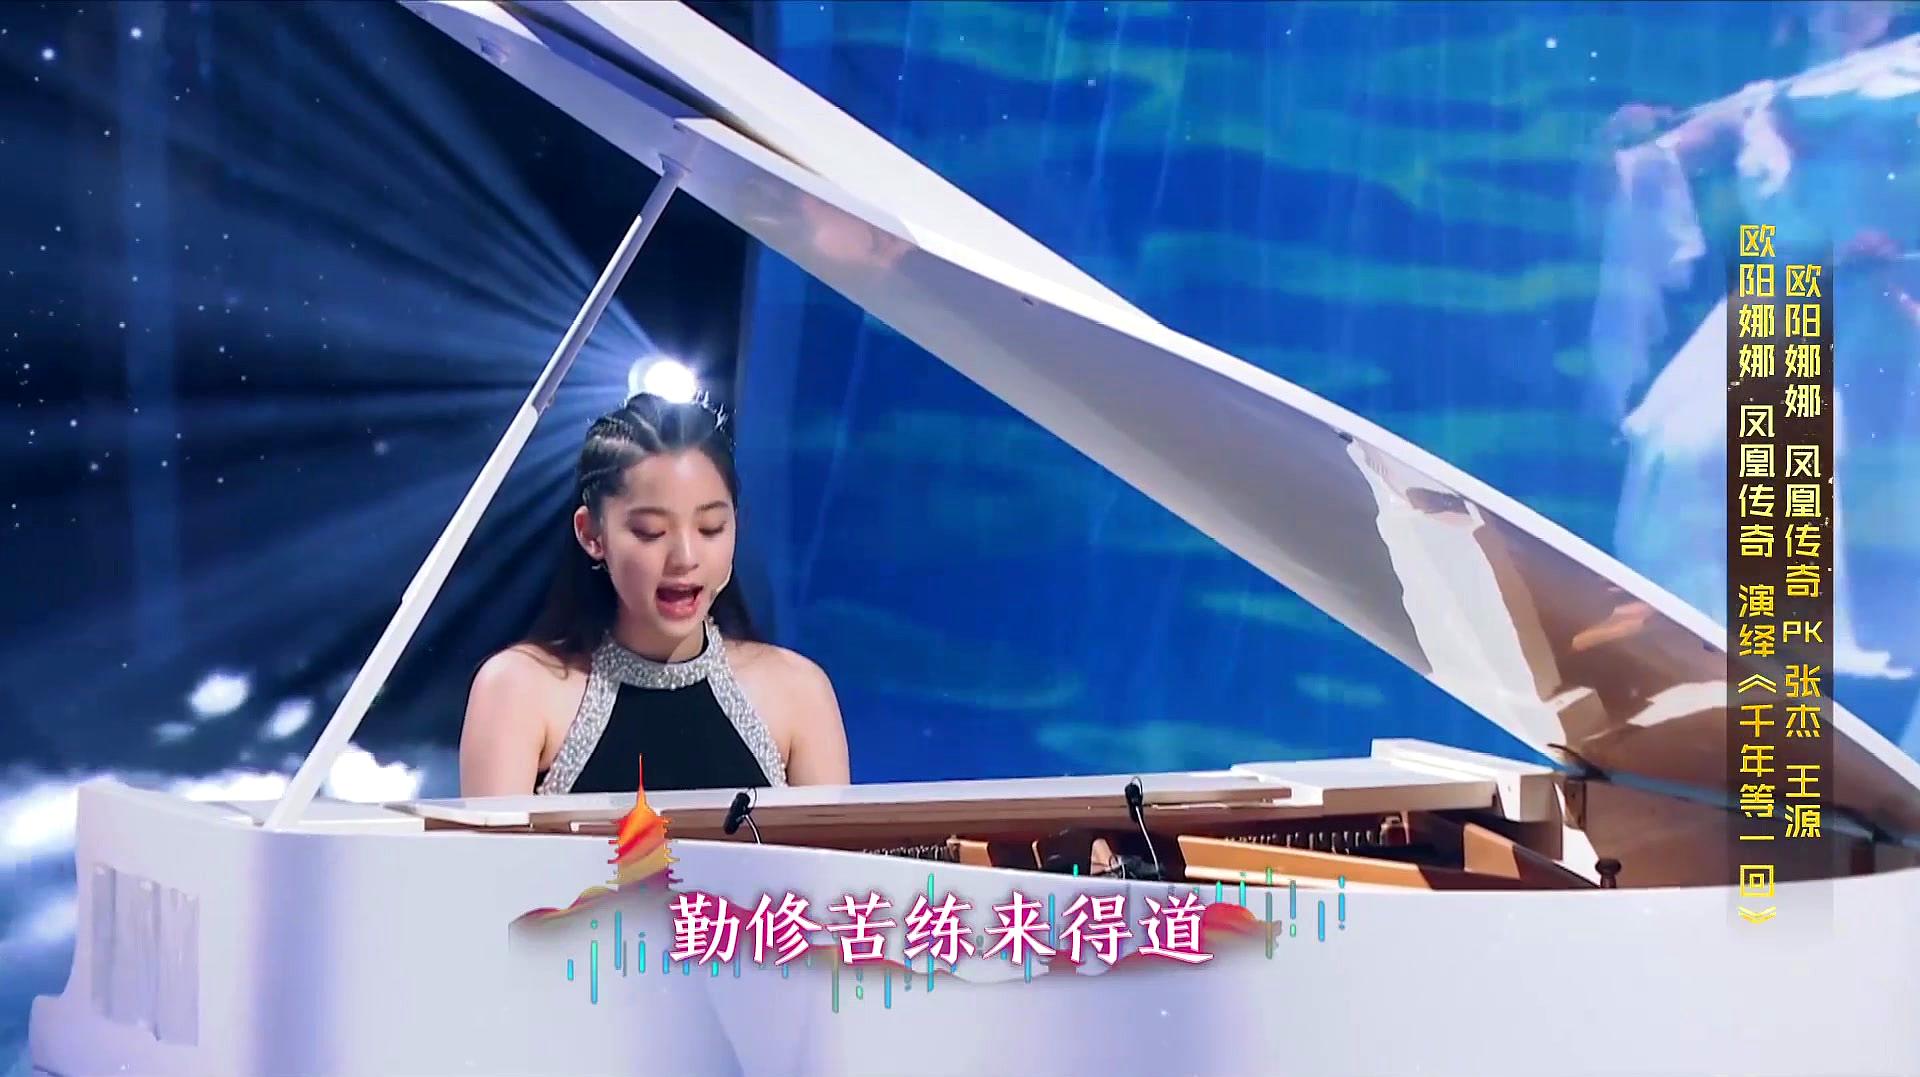 欧阳娜娜自弹钢琴唱《青城山下白素贞,美轮美奂,开口惊艳全场